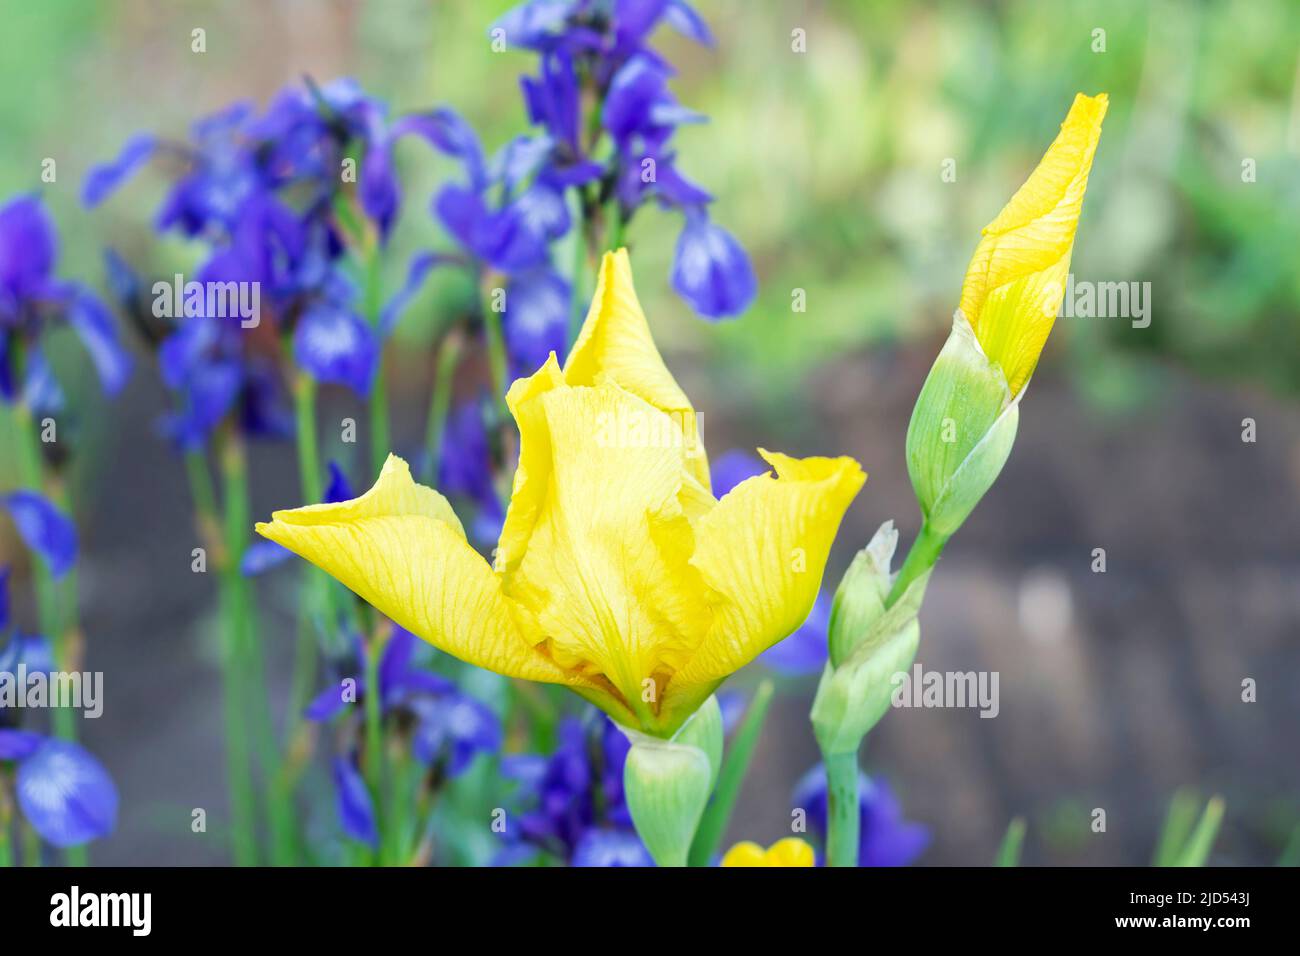 Una flor amarilla del iris florece sobre el fondo de las flores azules del iris borrosas en el jardín. Enfoque selectivo Foto de stock